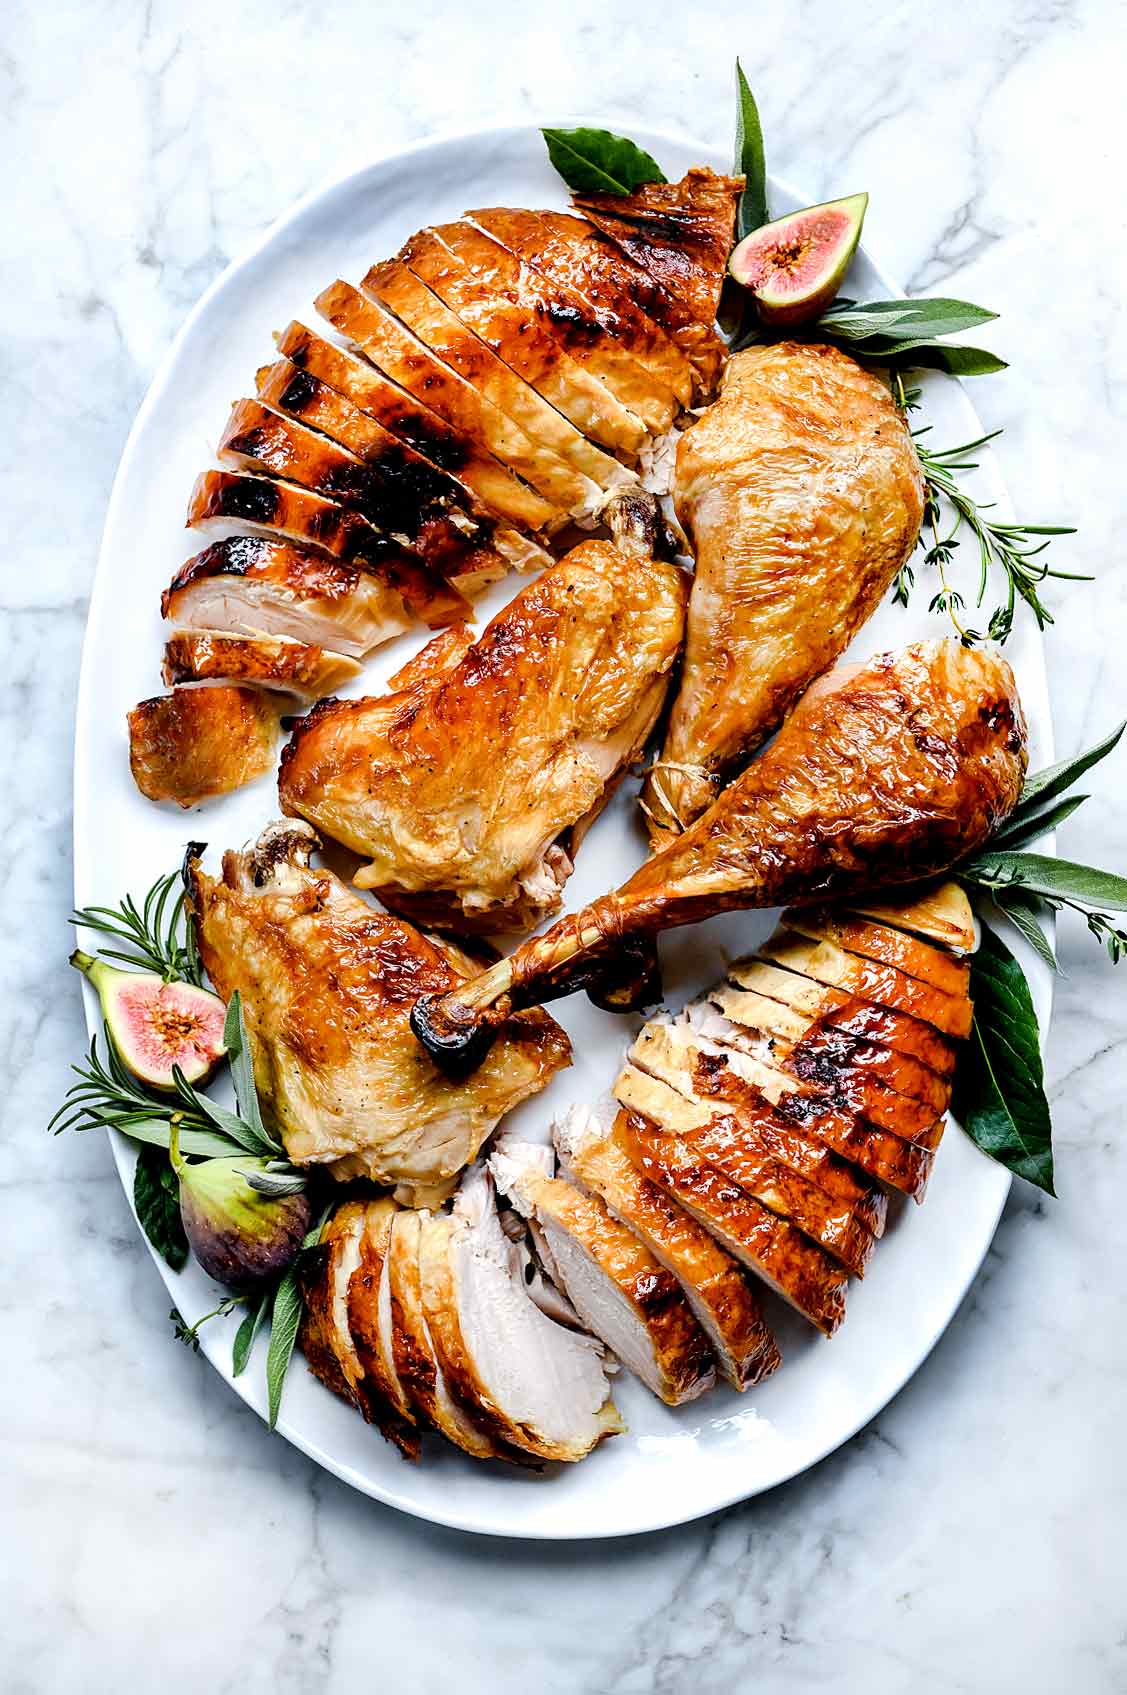 Comment faire cuire une dinde parfaitement juteuse | foodiecrush.com #turkey #recipes #dinner #thanksgiving